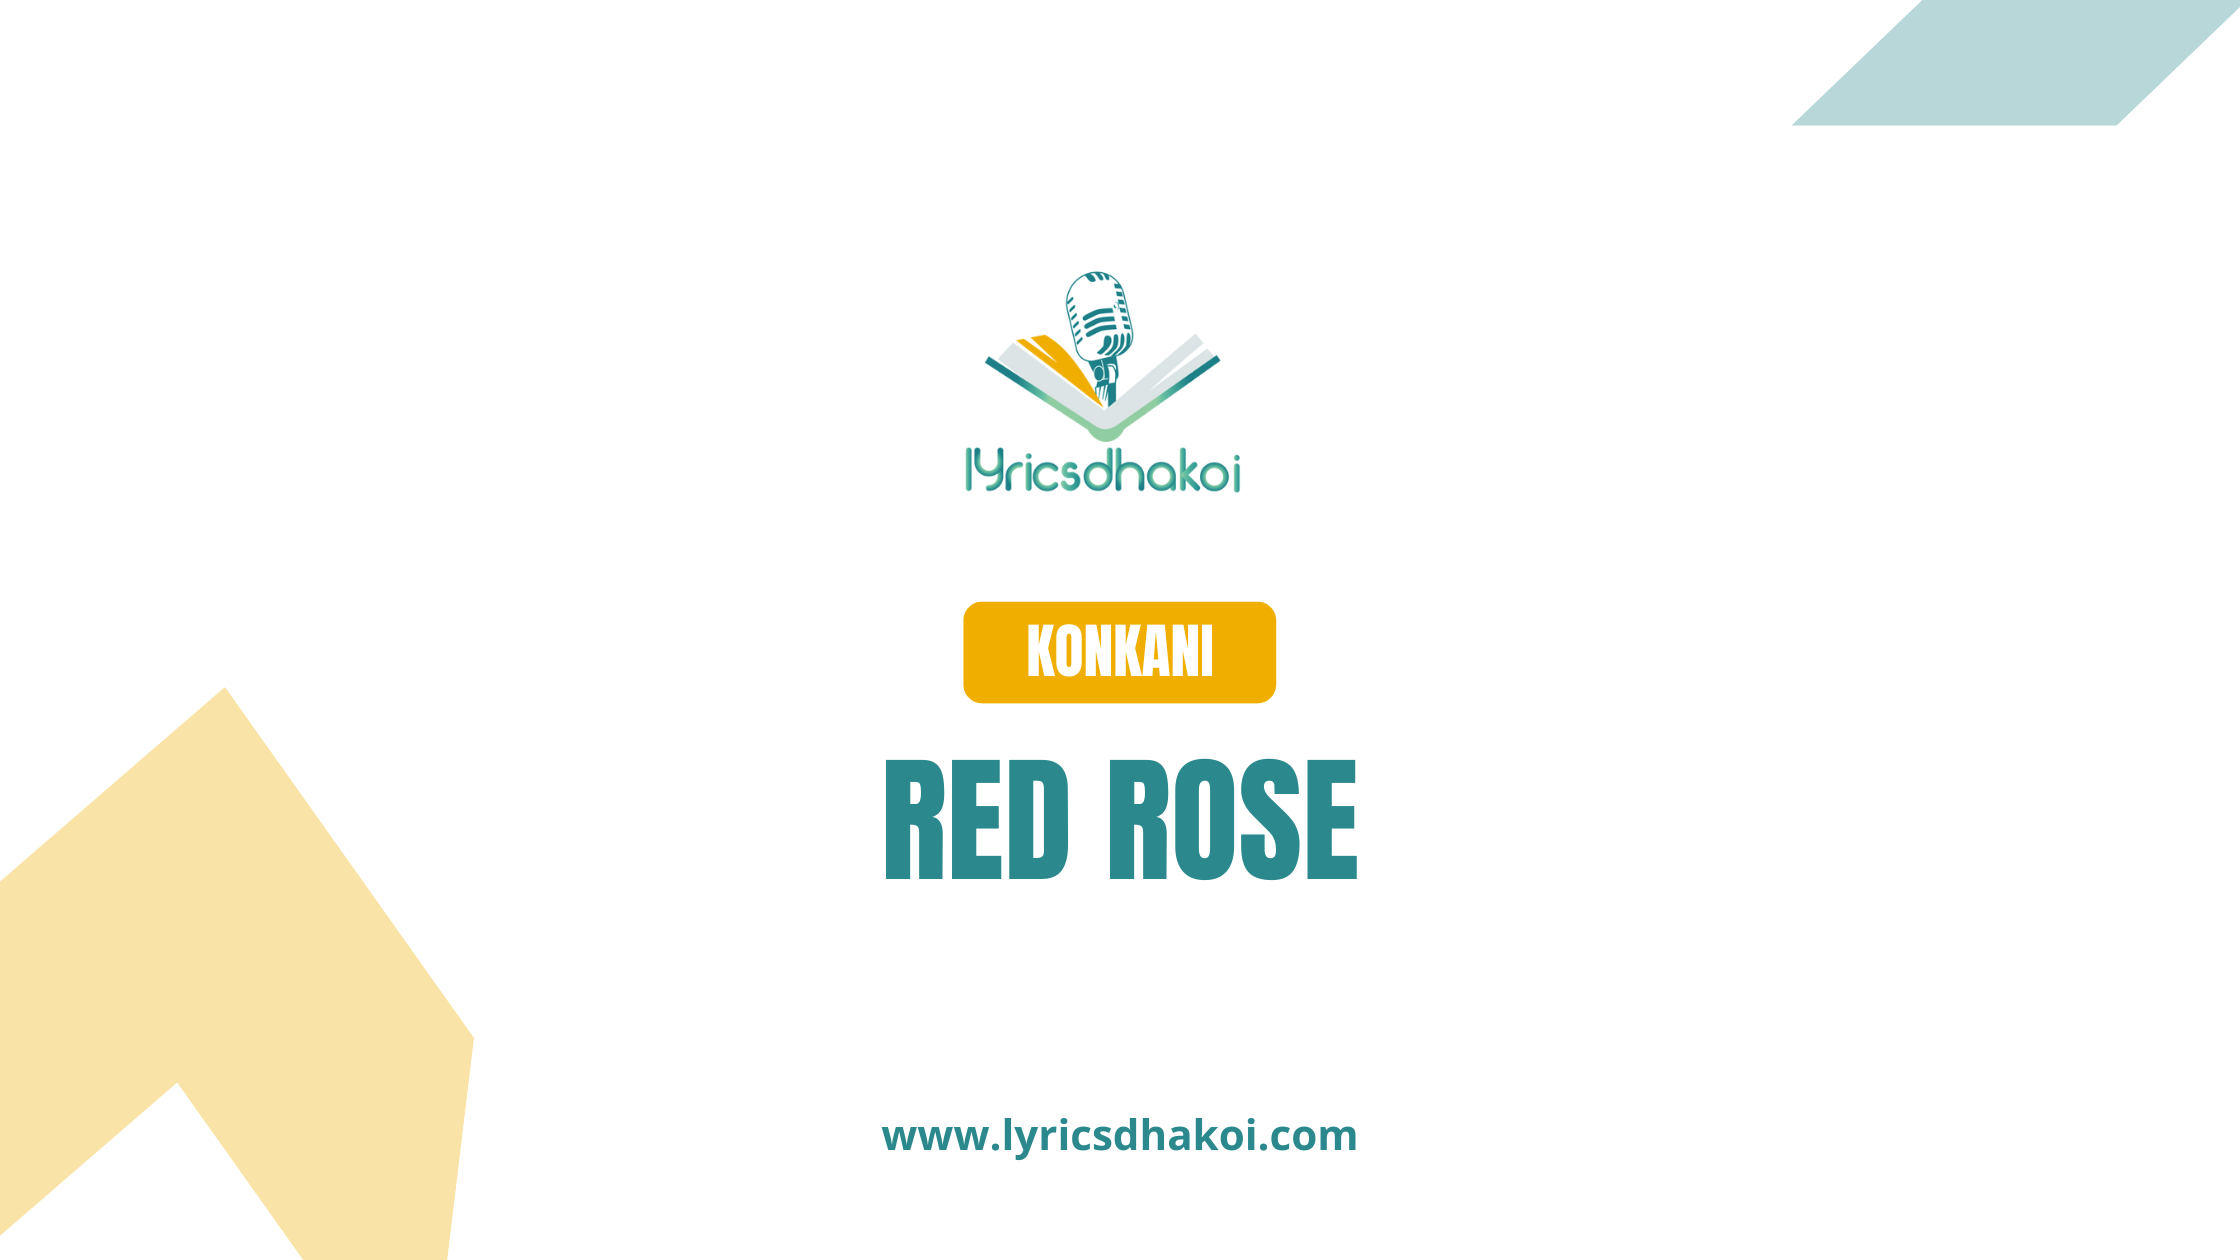 Red Rose Konkani Lyrics for Karaoke Online - LyricsDhakoi.com